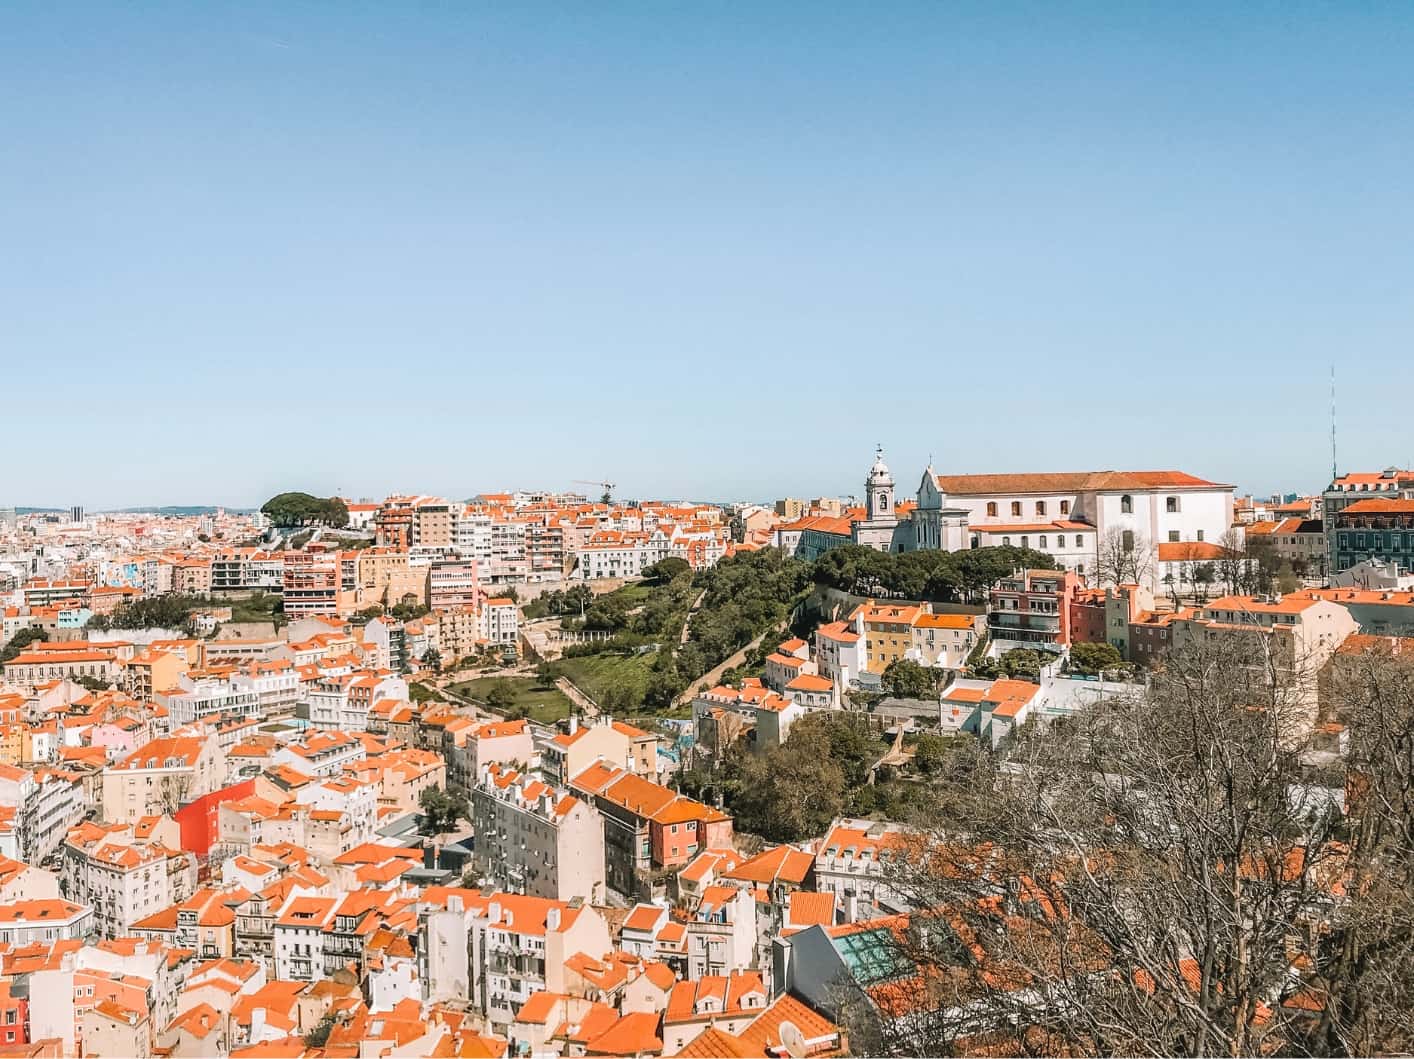 Views from Castello de São Jorge. 